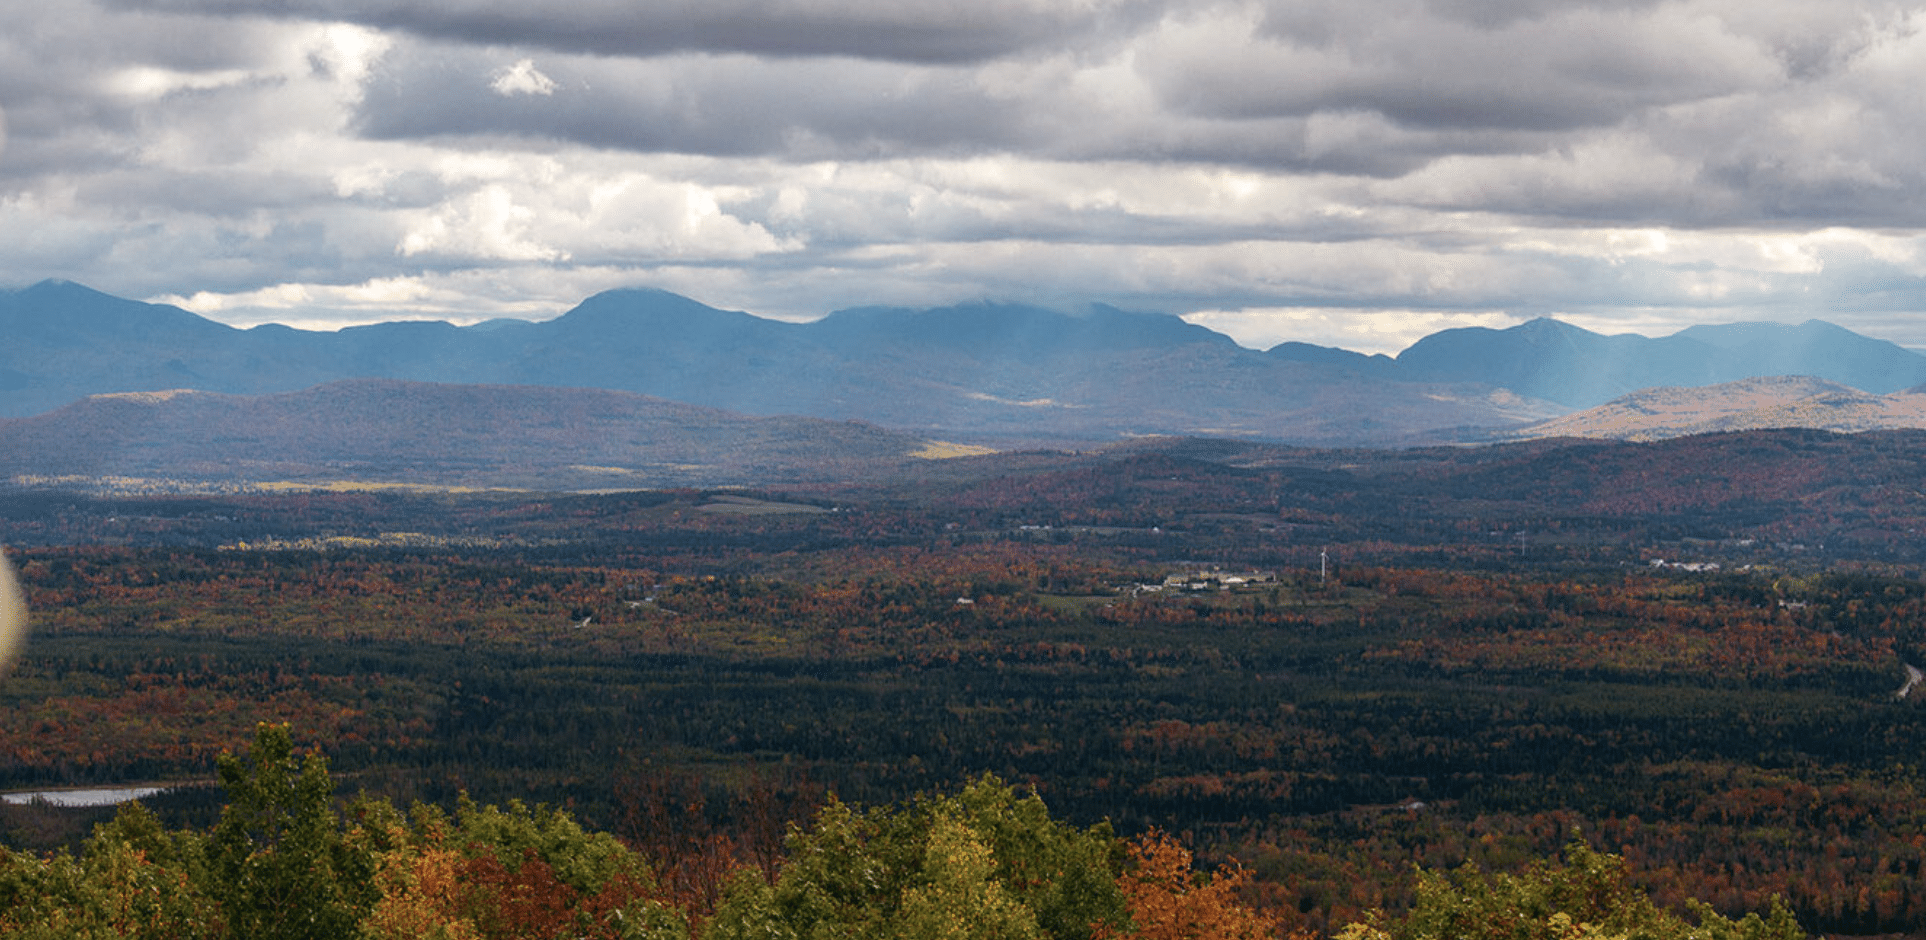 Autumn mountain range on a cloudy day